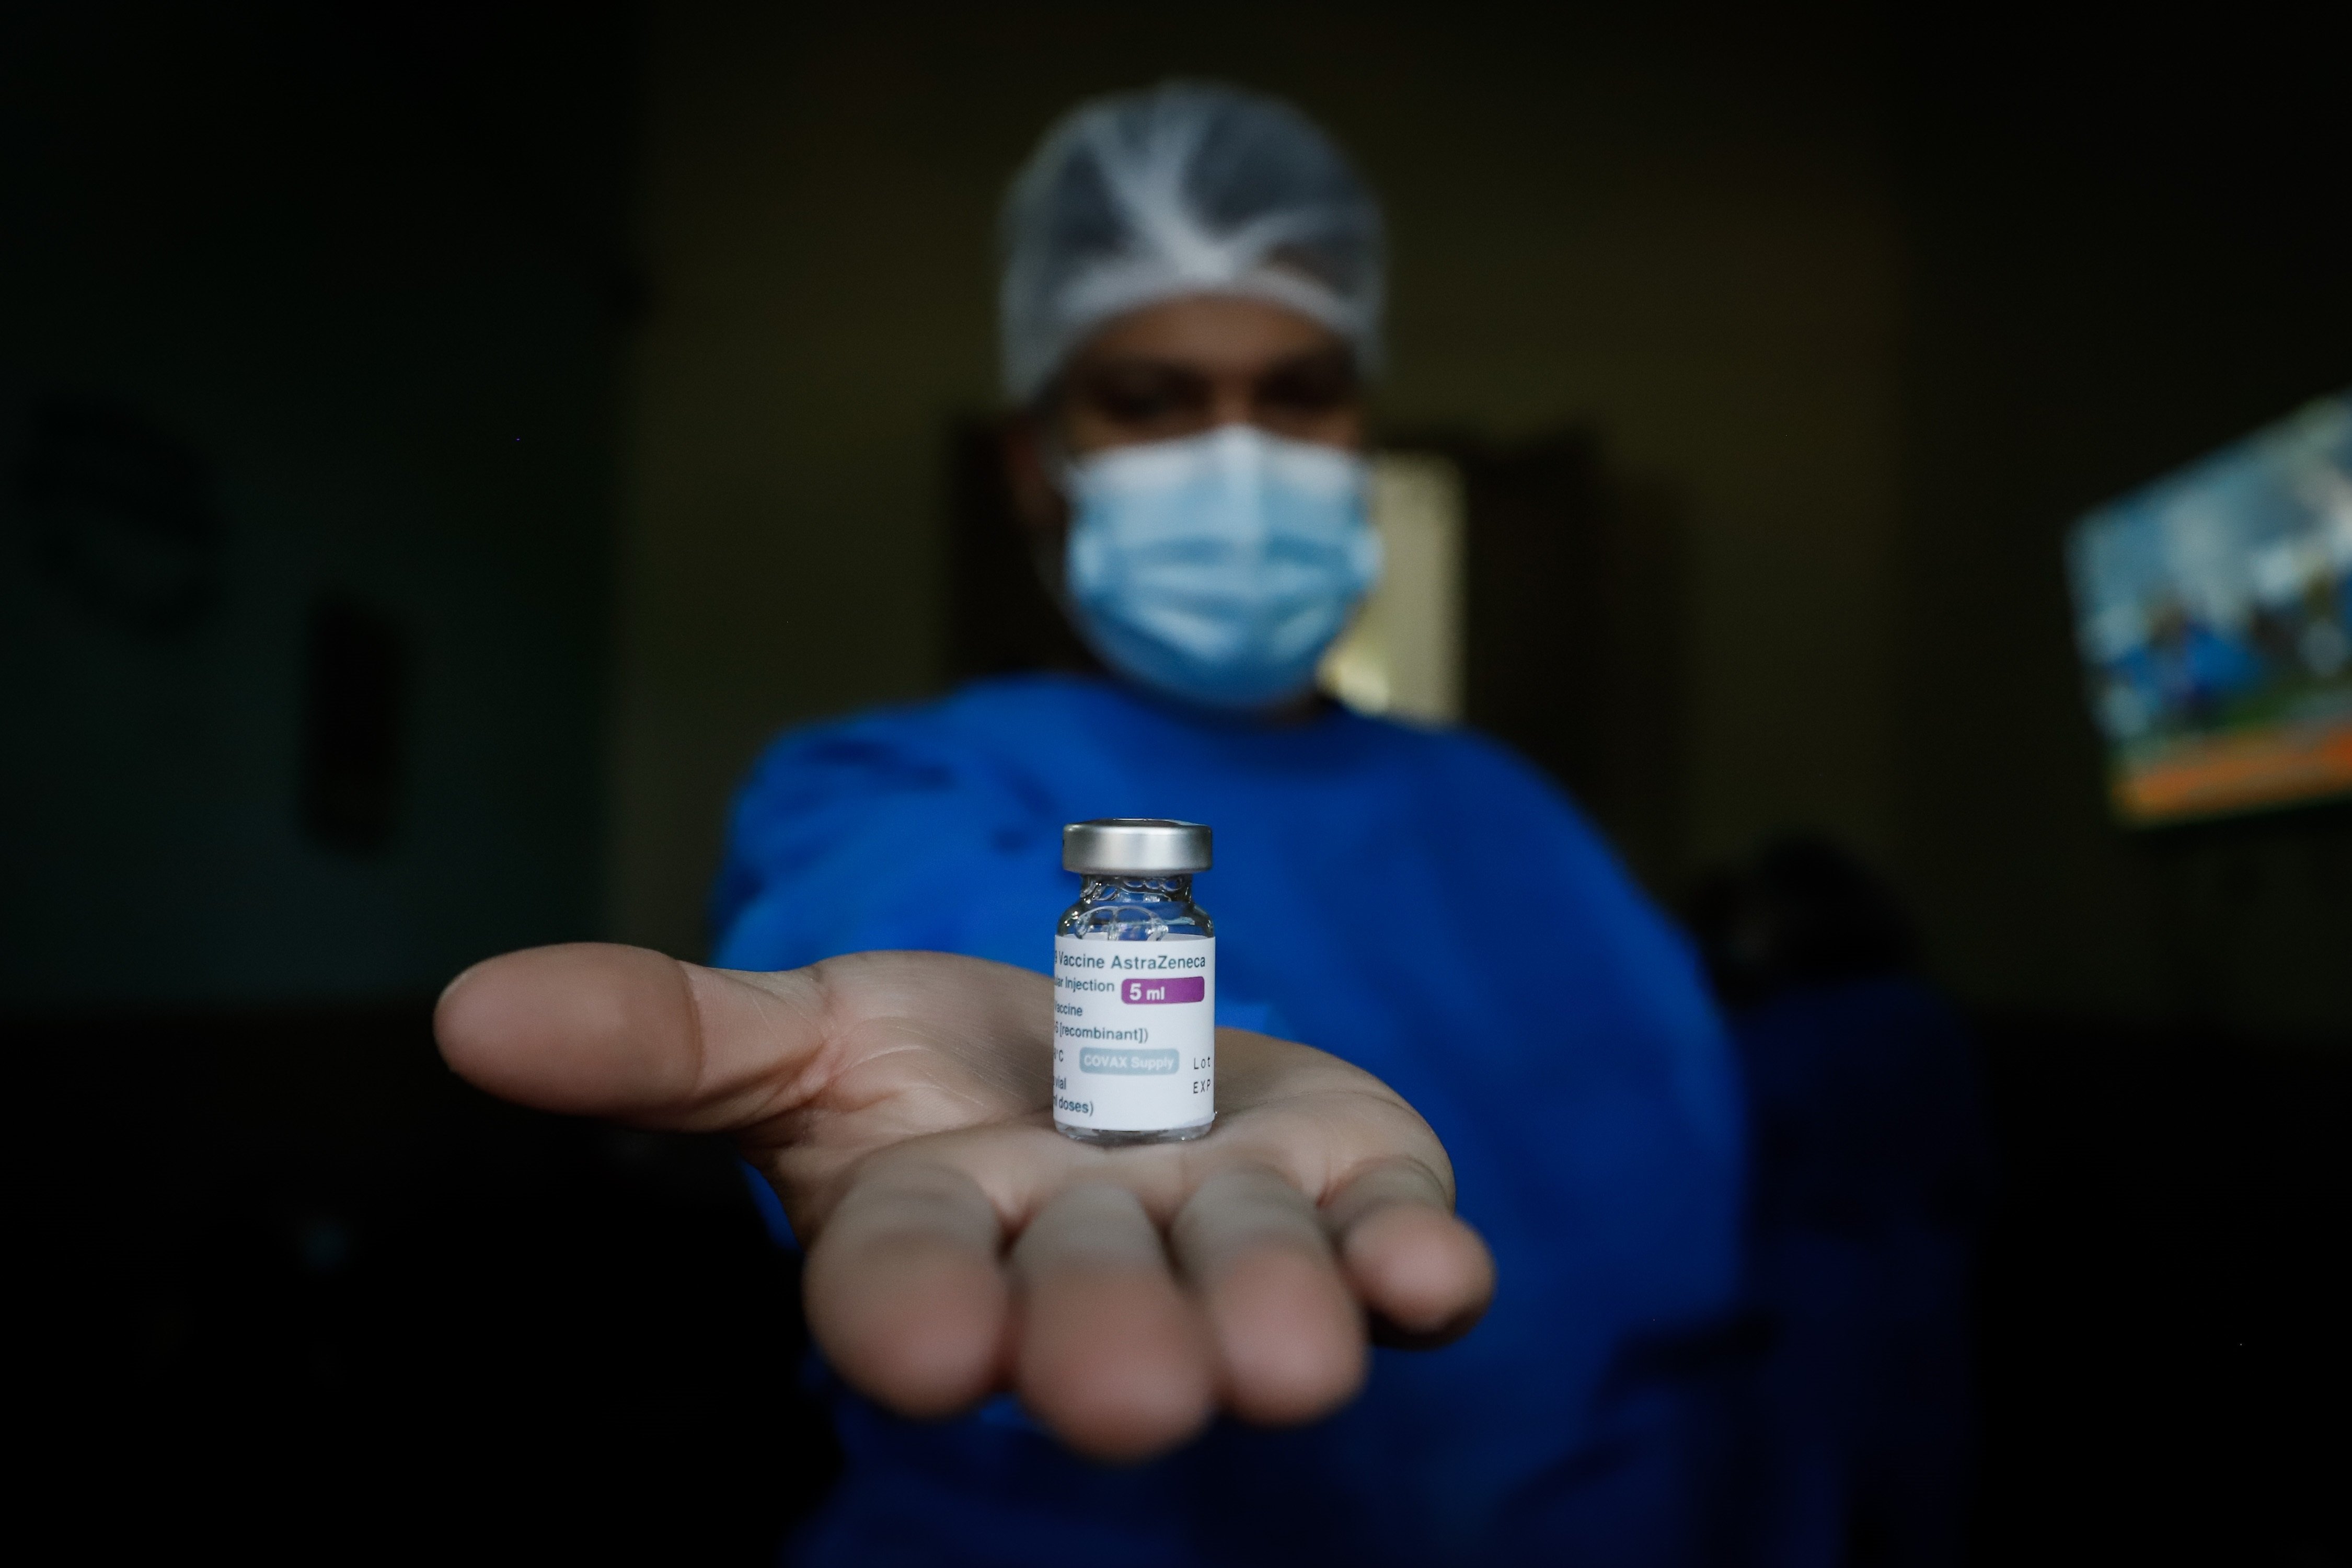 Mor un militar als 35 anys, dies després de rebre la vacuna AstraZeneca